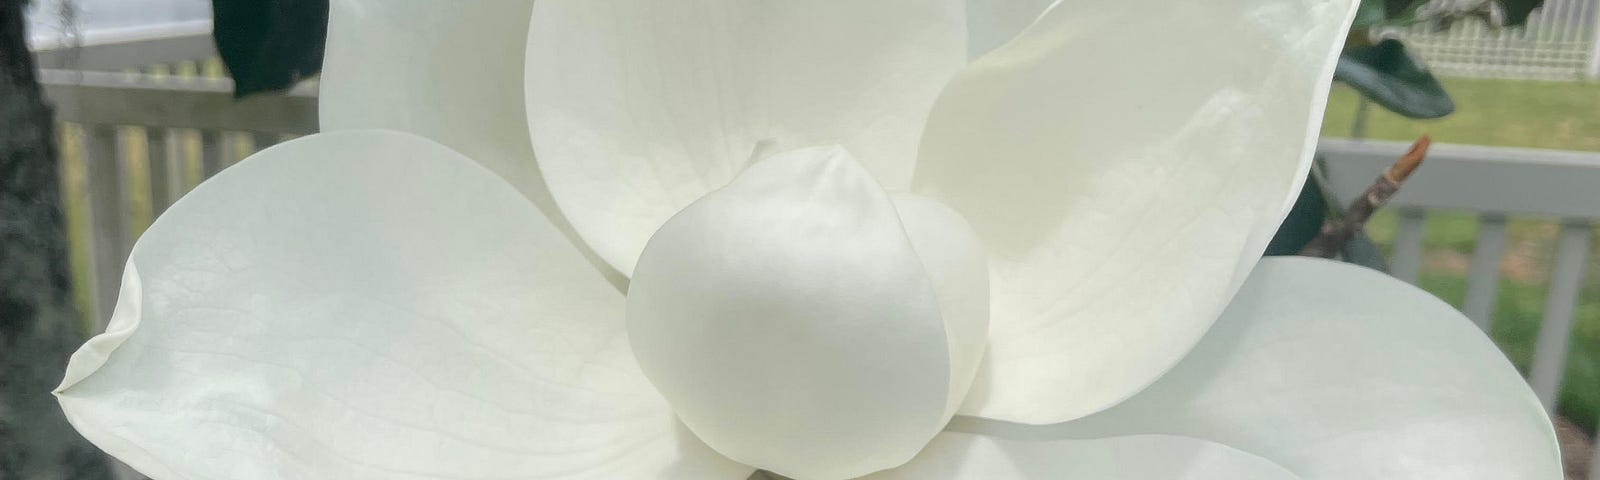 Magnolia Blossom — by Author, 2023